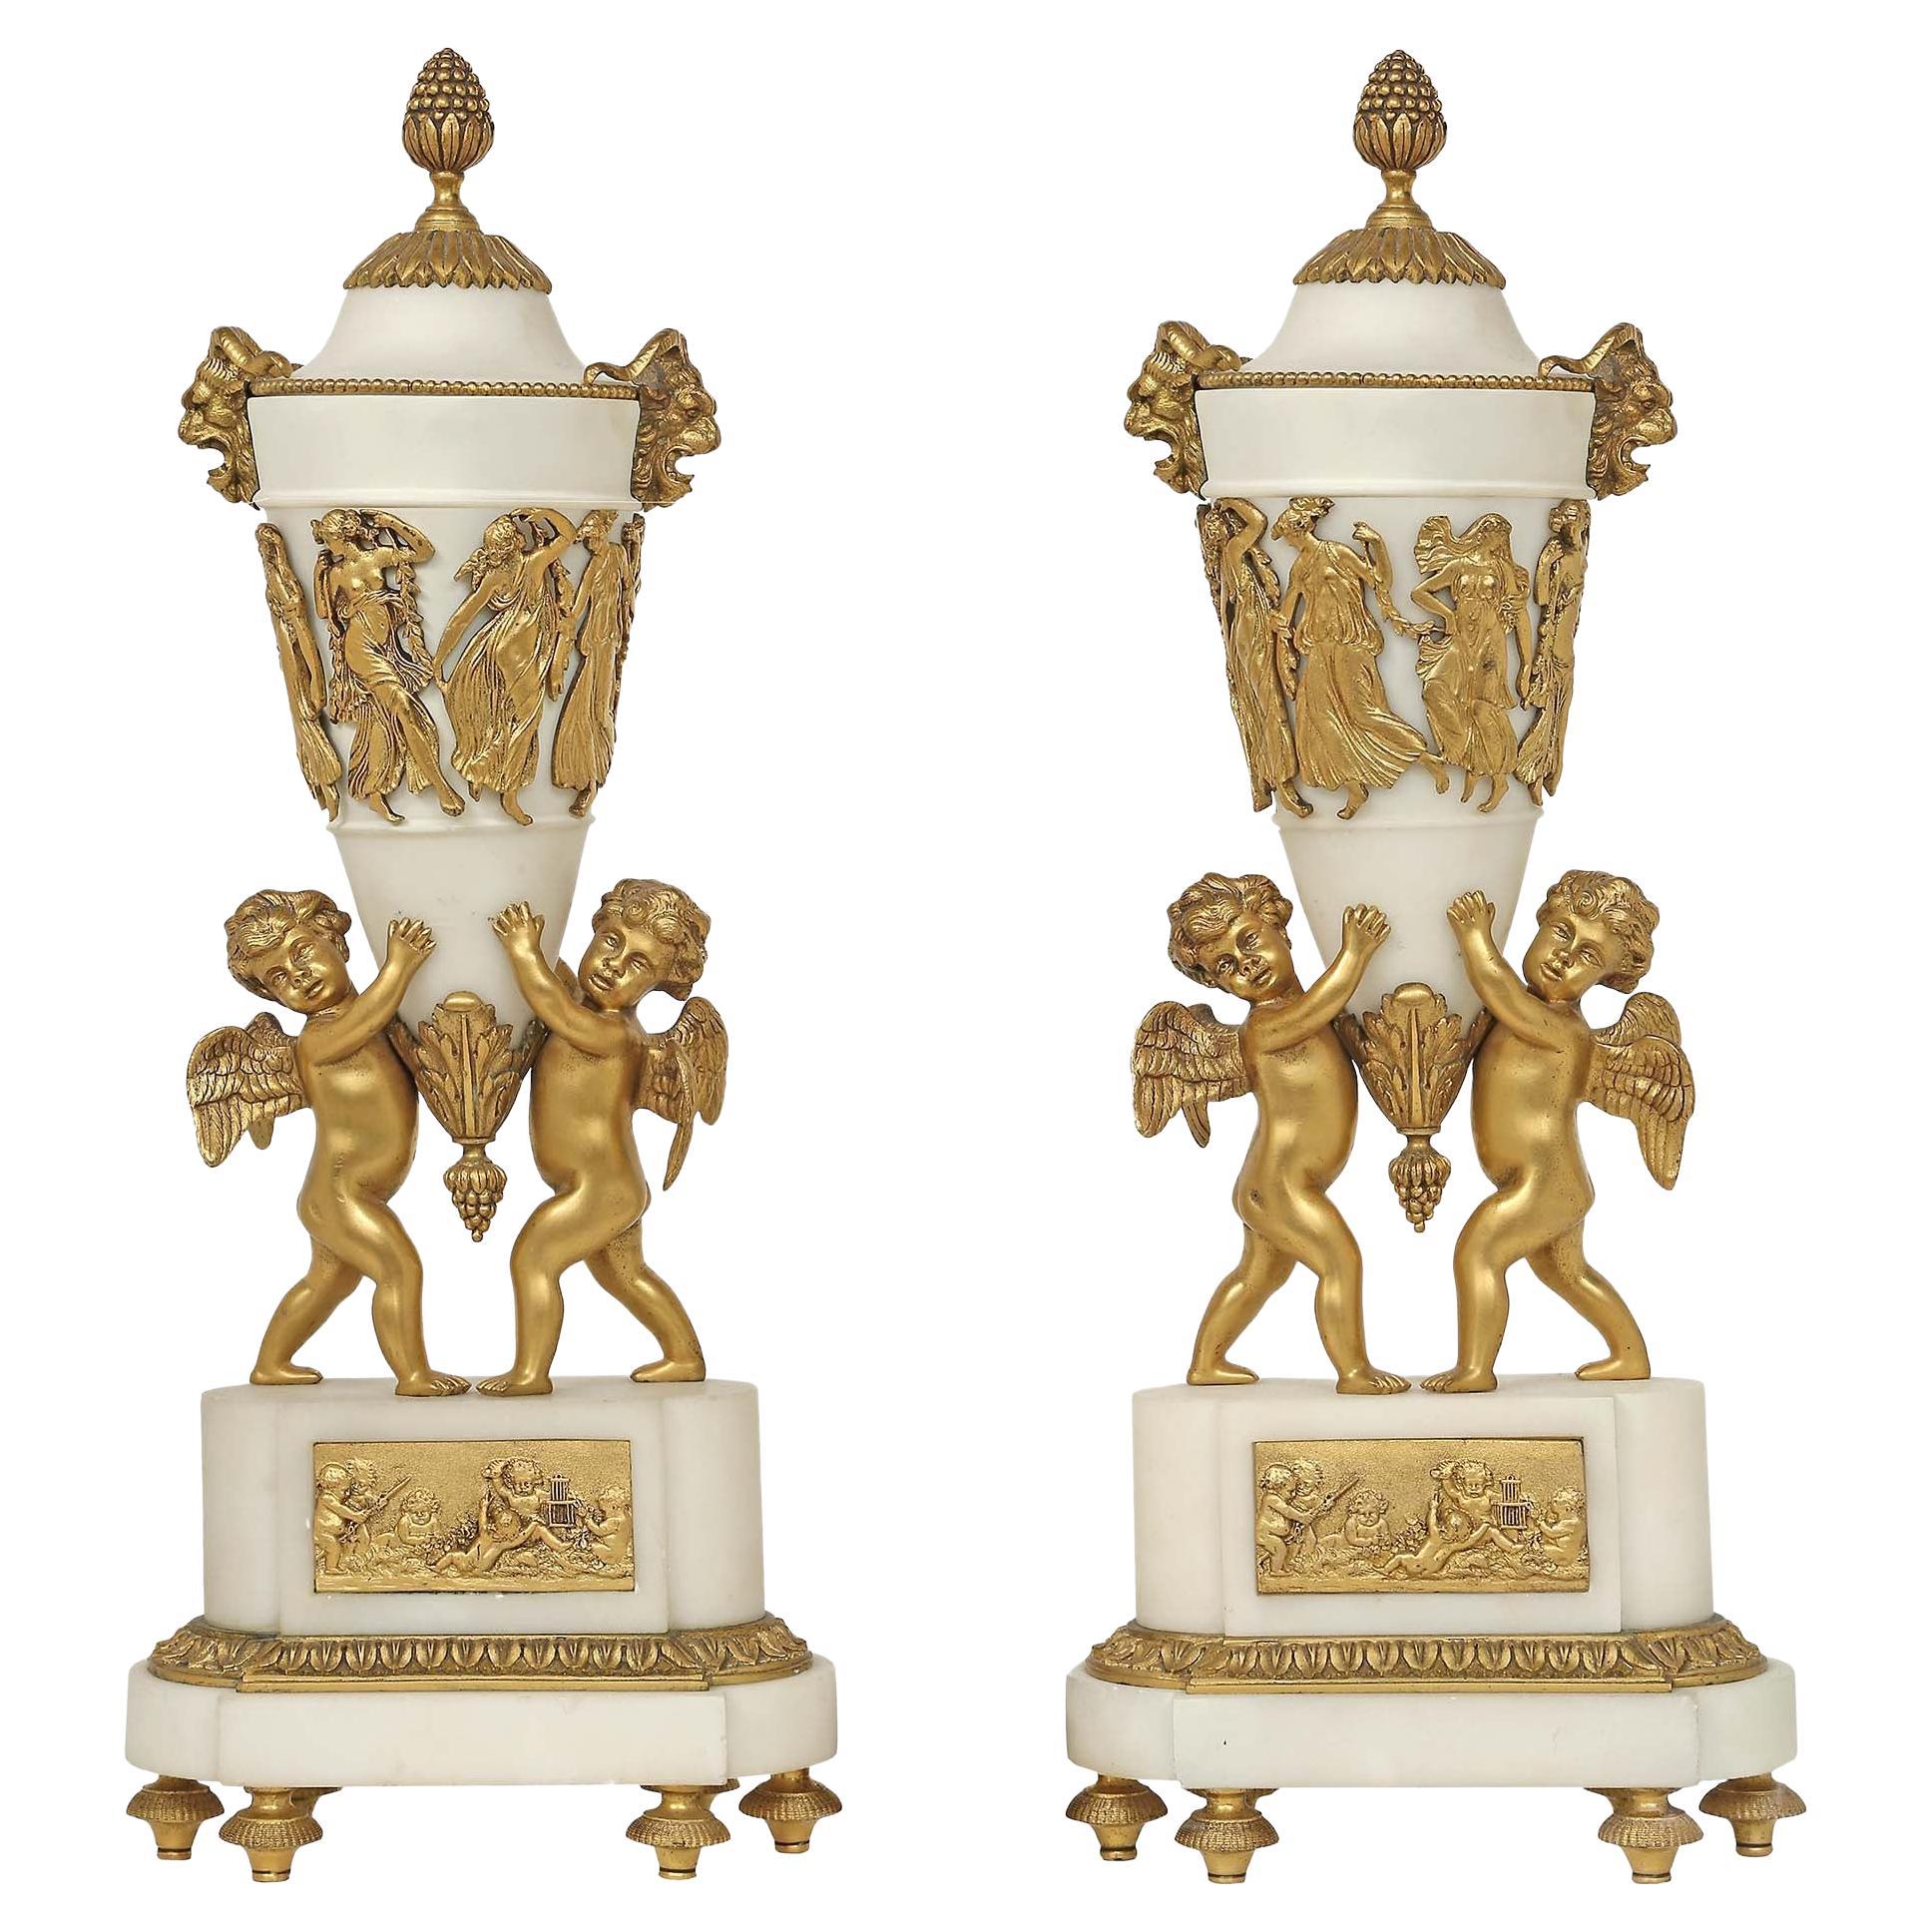 Cassolettes françaises de style Louis XVI du 19ème siècle en marbre de Carrare blanc et bronze doré